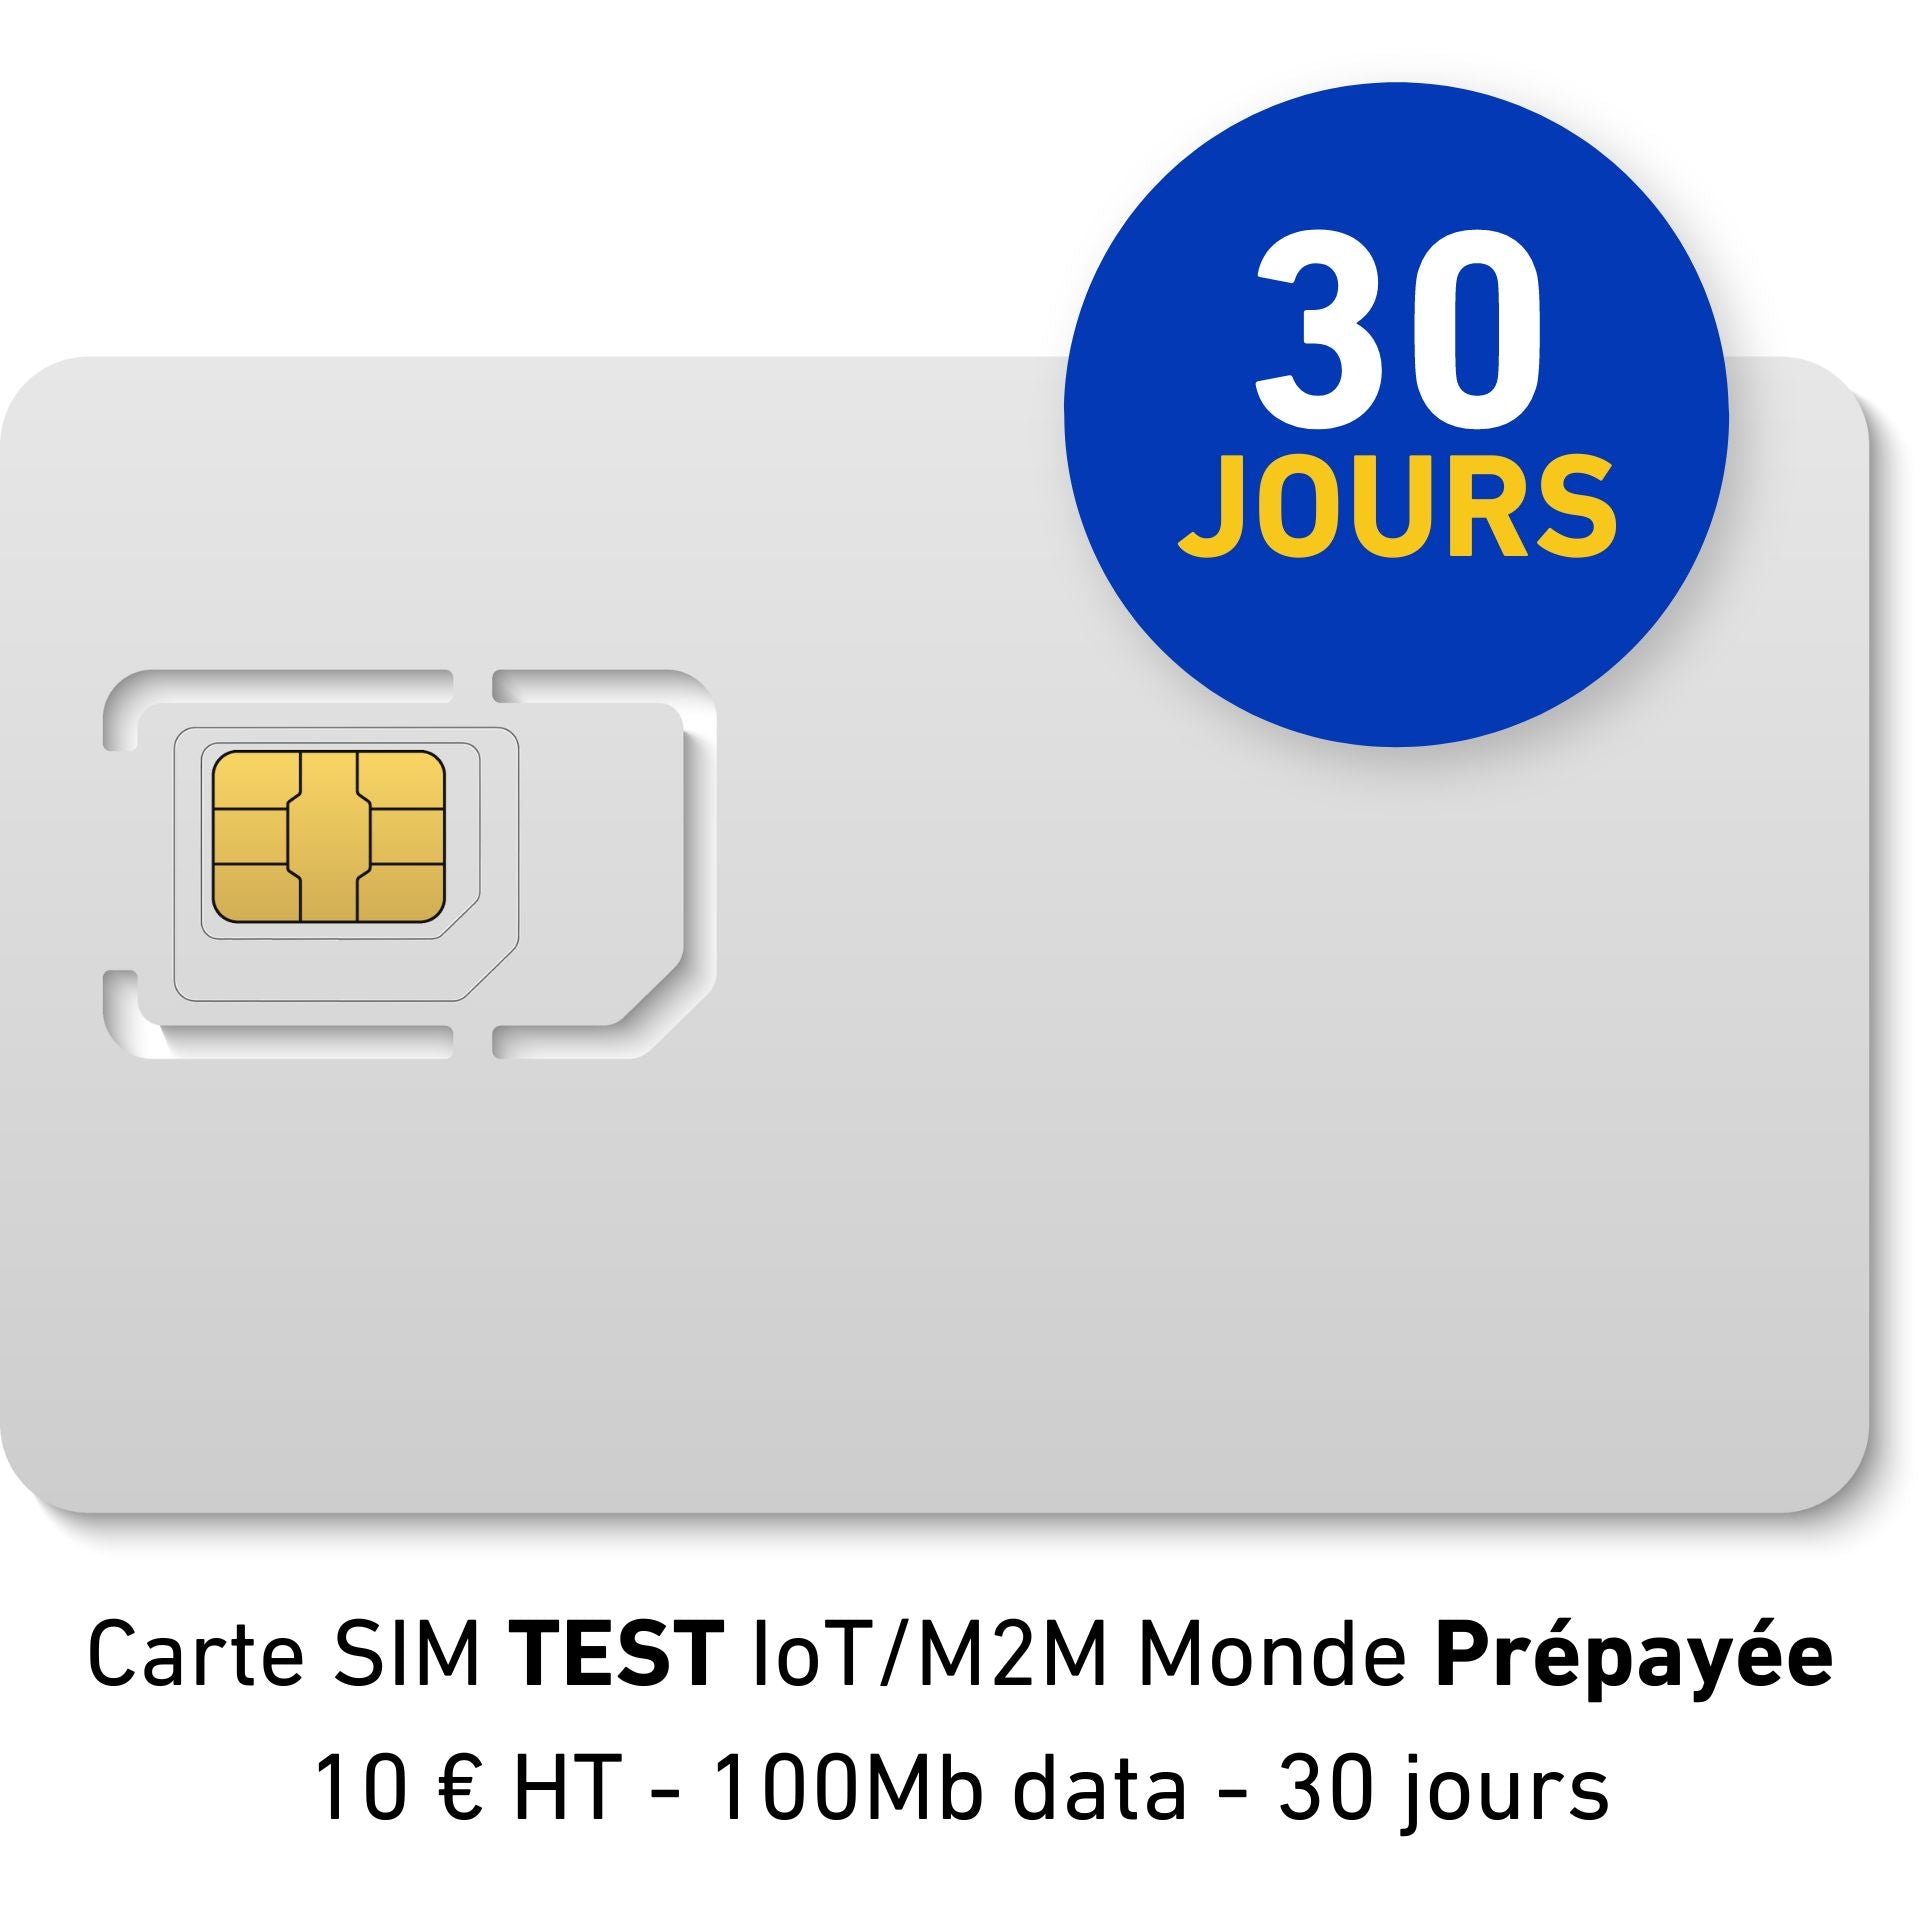 IoT/M2M World Prepaid TEST SIM Card - 10 € HT - 100Mb data - 30 days